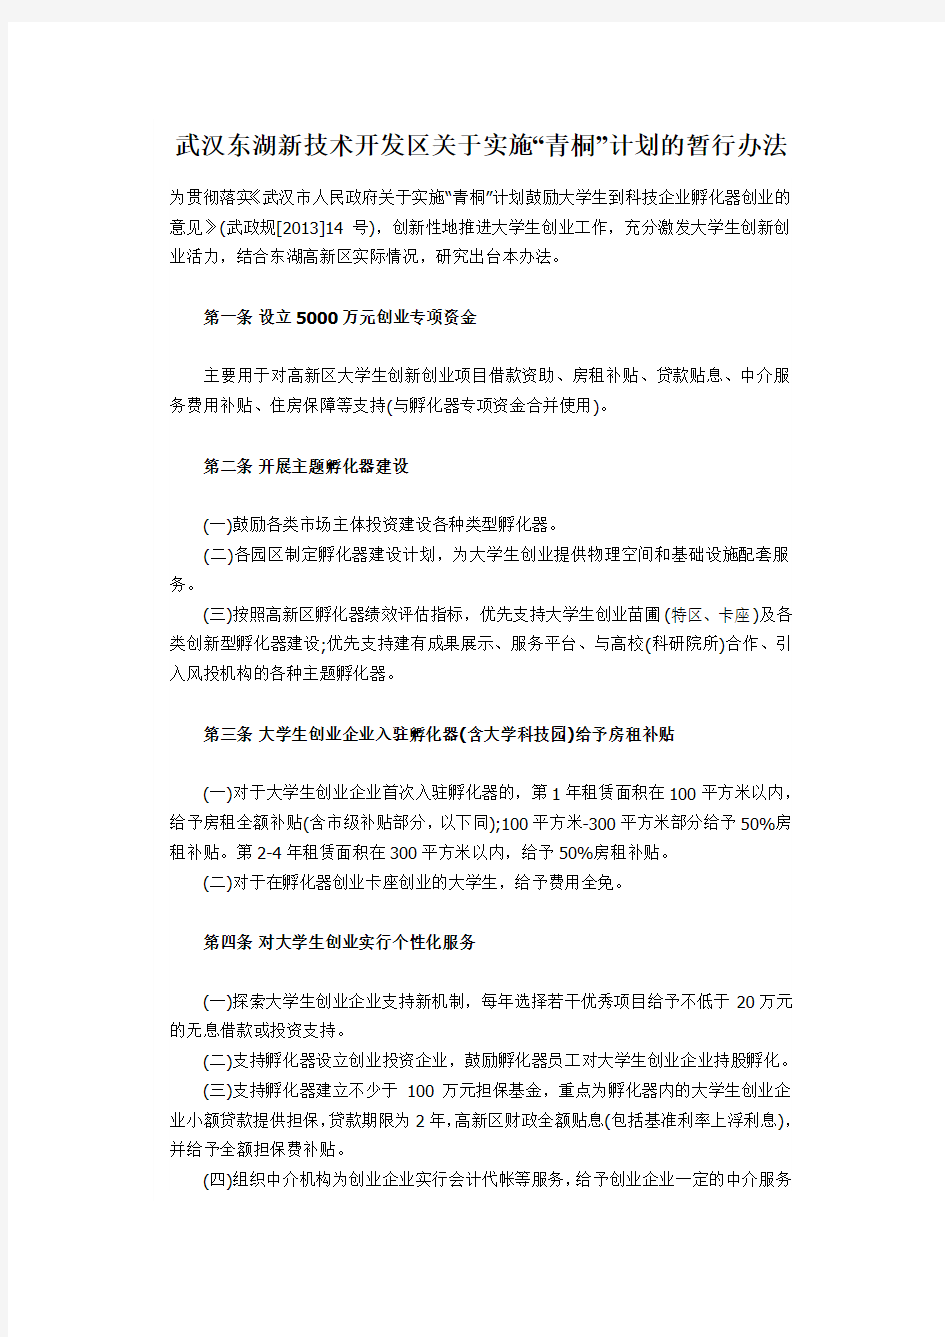 武汉东湖新技术开发区关于实施“青桐”计划的暂行办法